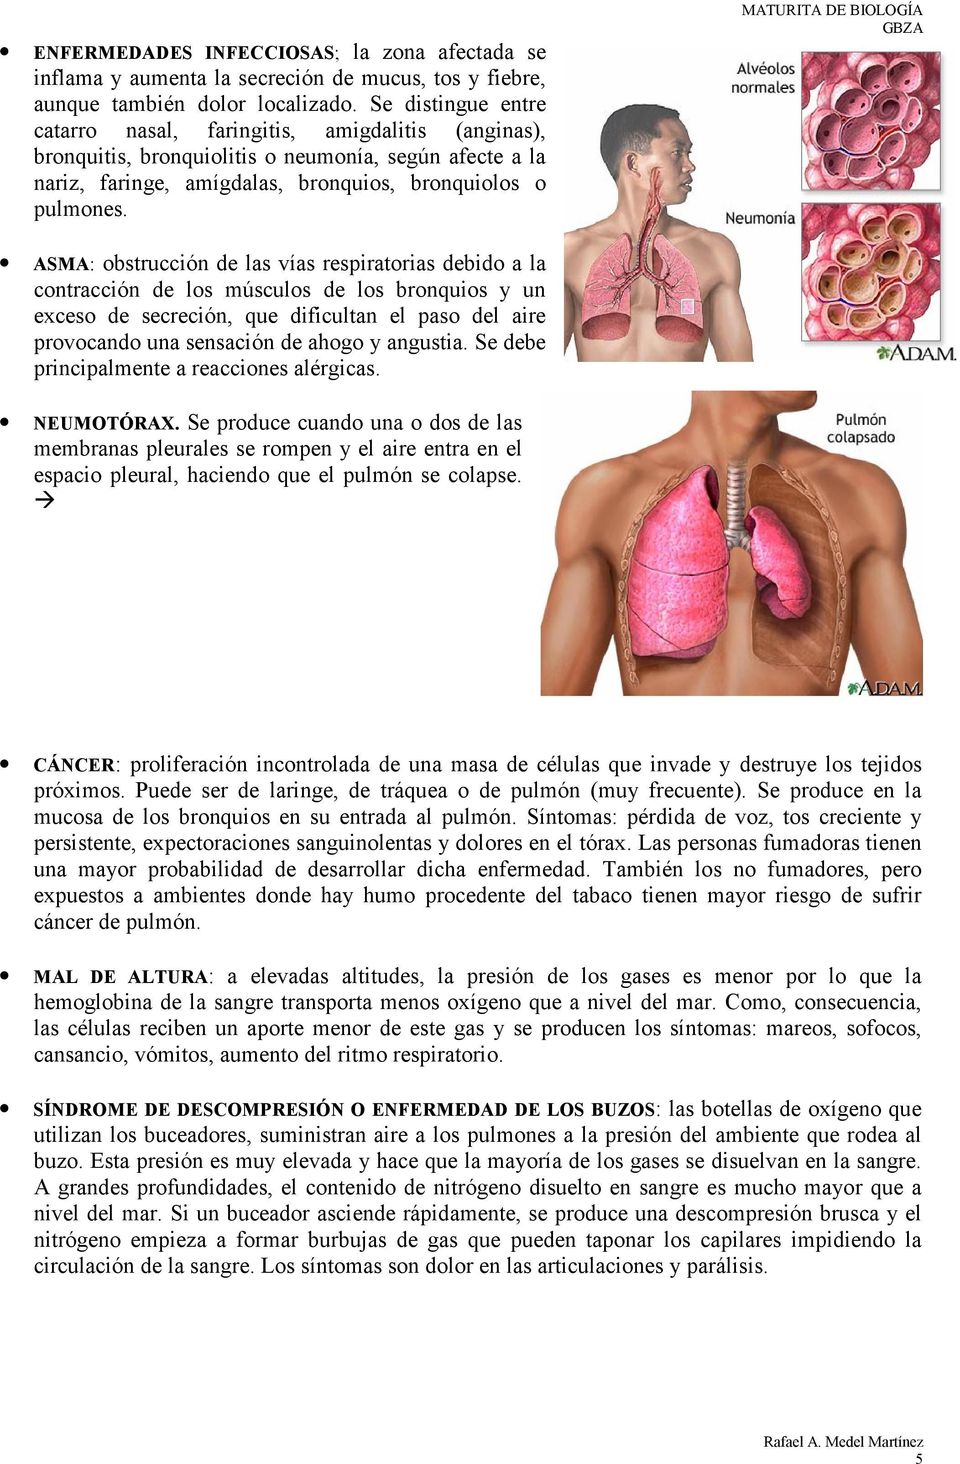 MATURITA DE BIOLOGÍA ASMA: obstrucción de las vías respiratorias debido a la contracción de los músculos de los bronquios y un exceso de secreción, que dificultan el paso del aire provocando una